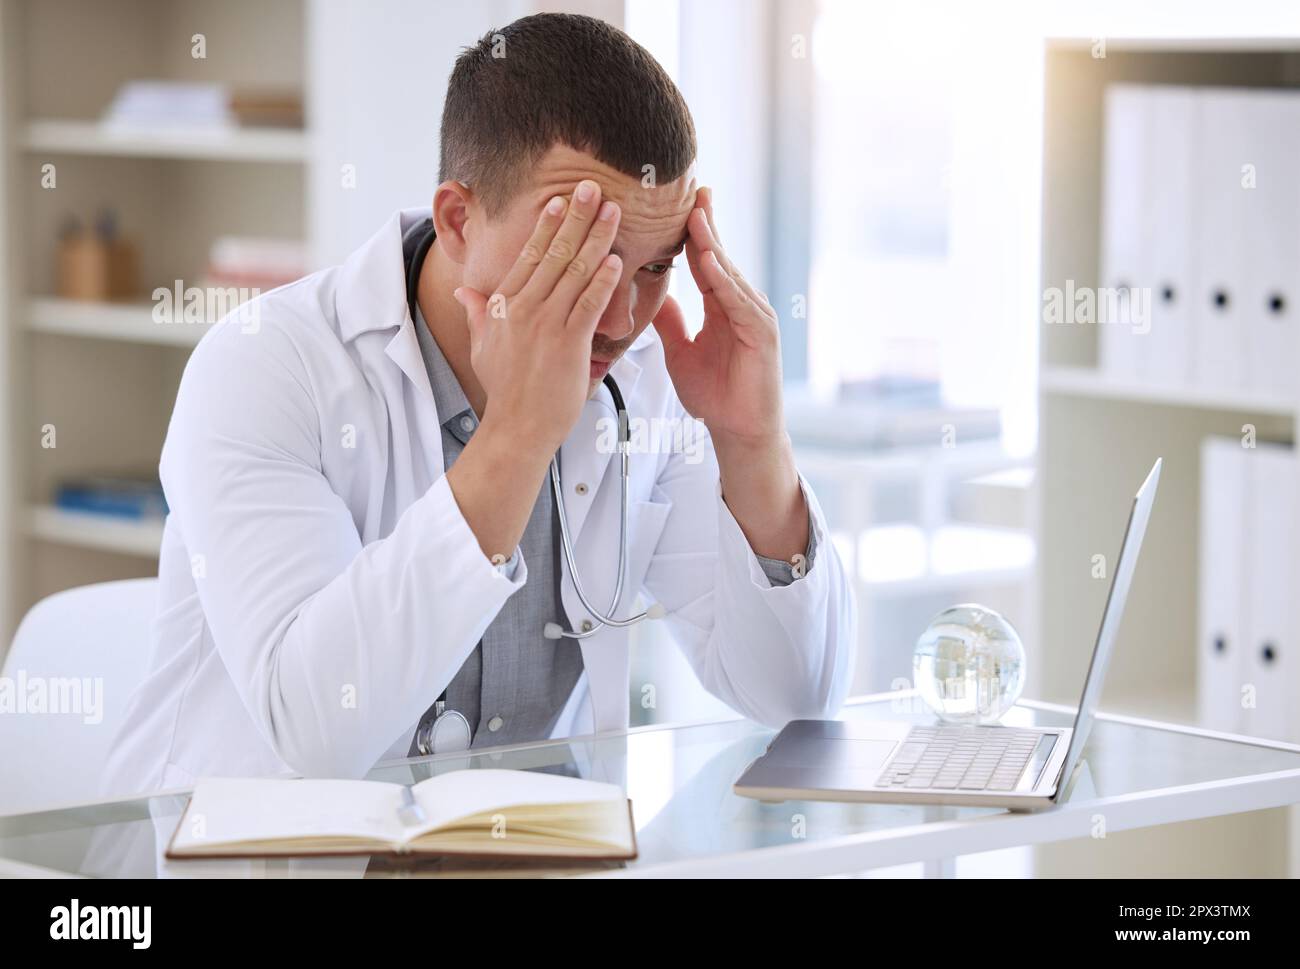 Ich kann bei diesen Kopfschmerzen nicht klar denken. Ein gutaussehender junger Arzt, der allein in seiner Klinik sitzt und sich gestresst fühlt, während er seinen Laptop benutzt Stockfoto